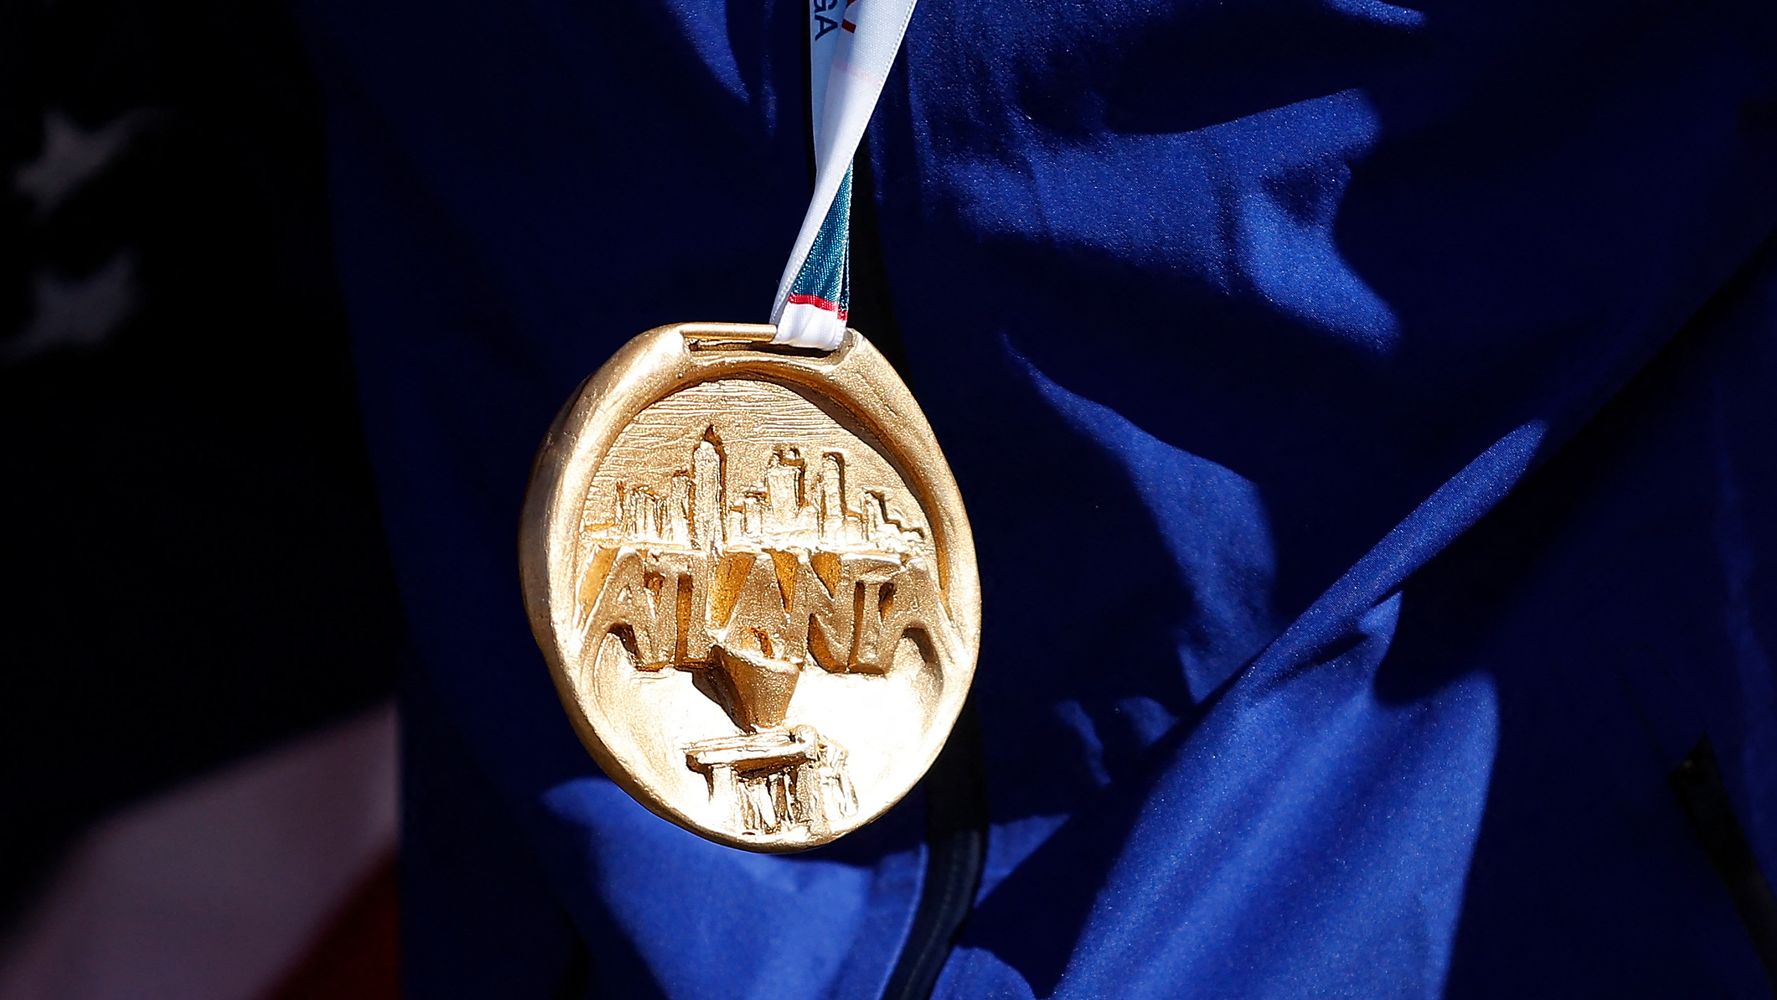 La médaille olympique de Sandra Forgues retrouvée par hasard sur une autoroute